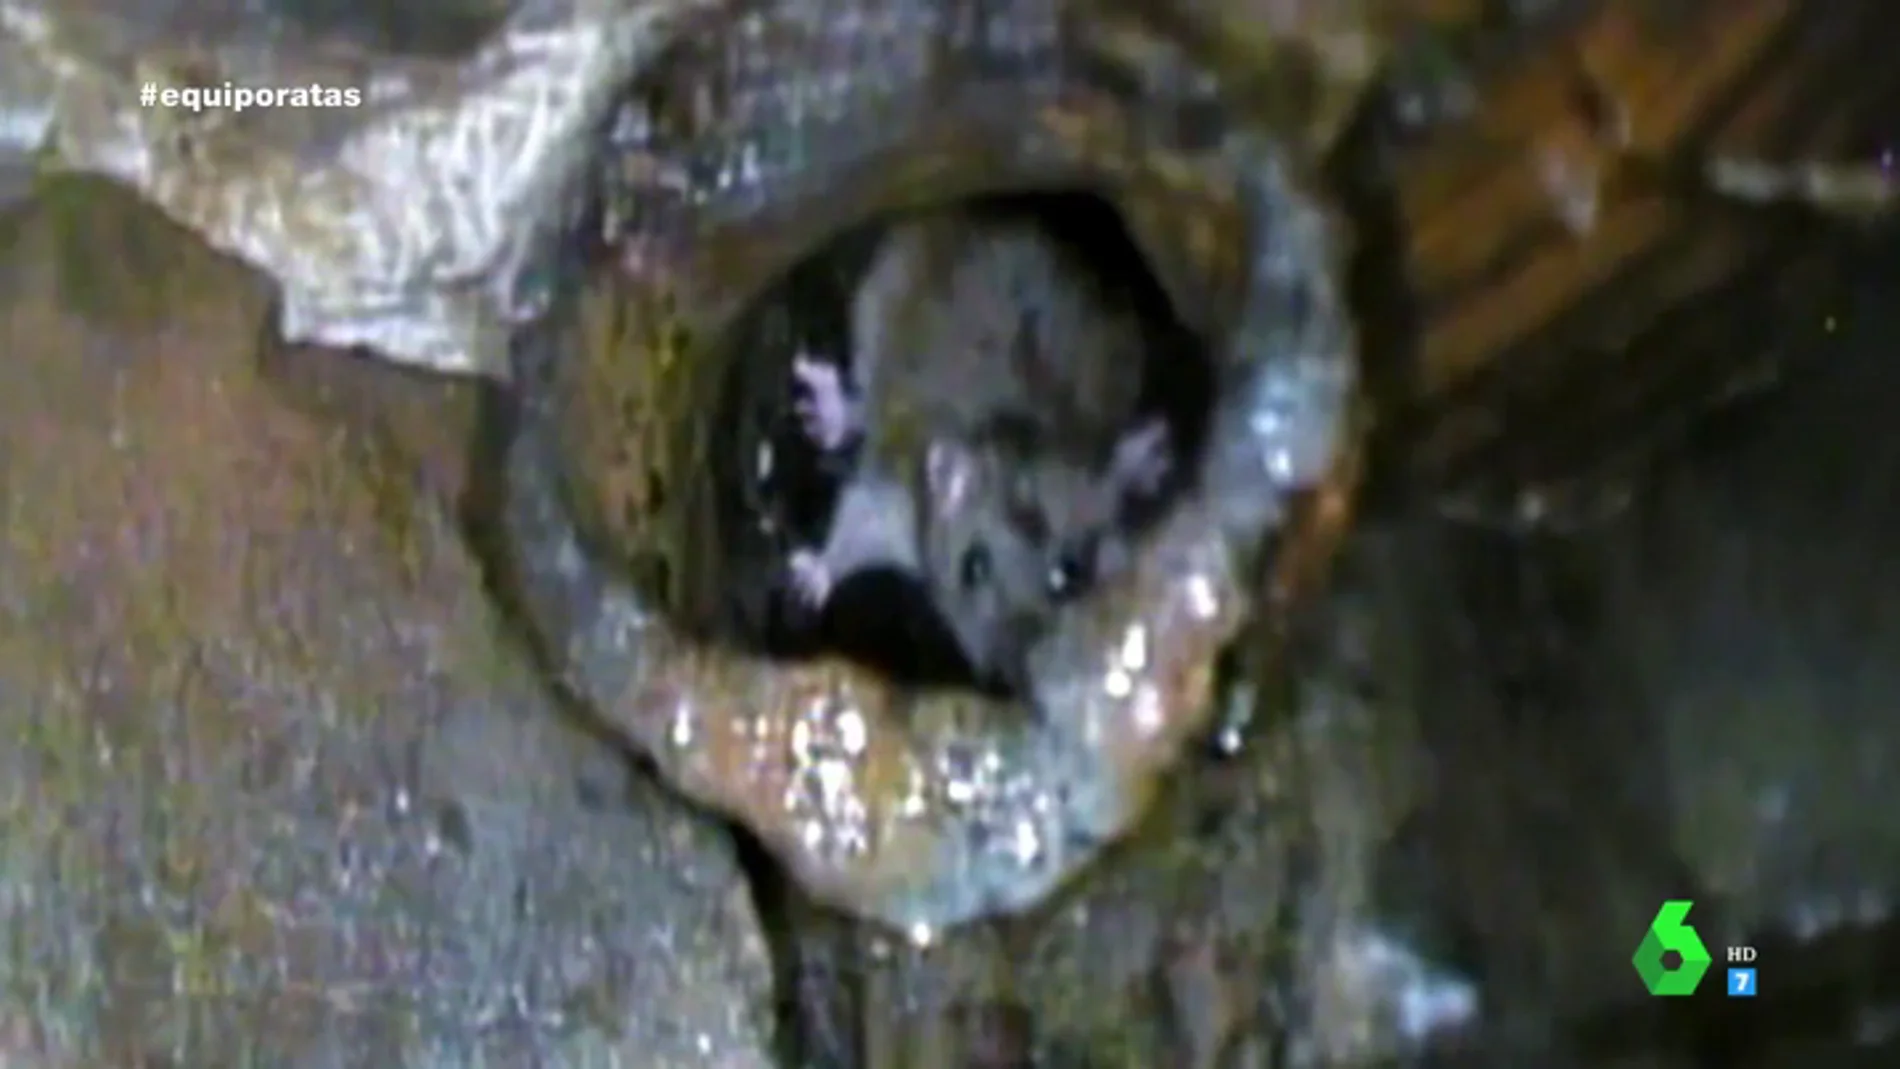 Los vecinos de San Blas denuncian el problema que viven con   las ratas: "Parecen uno más del barrio, son enormes"